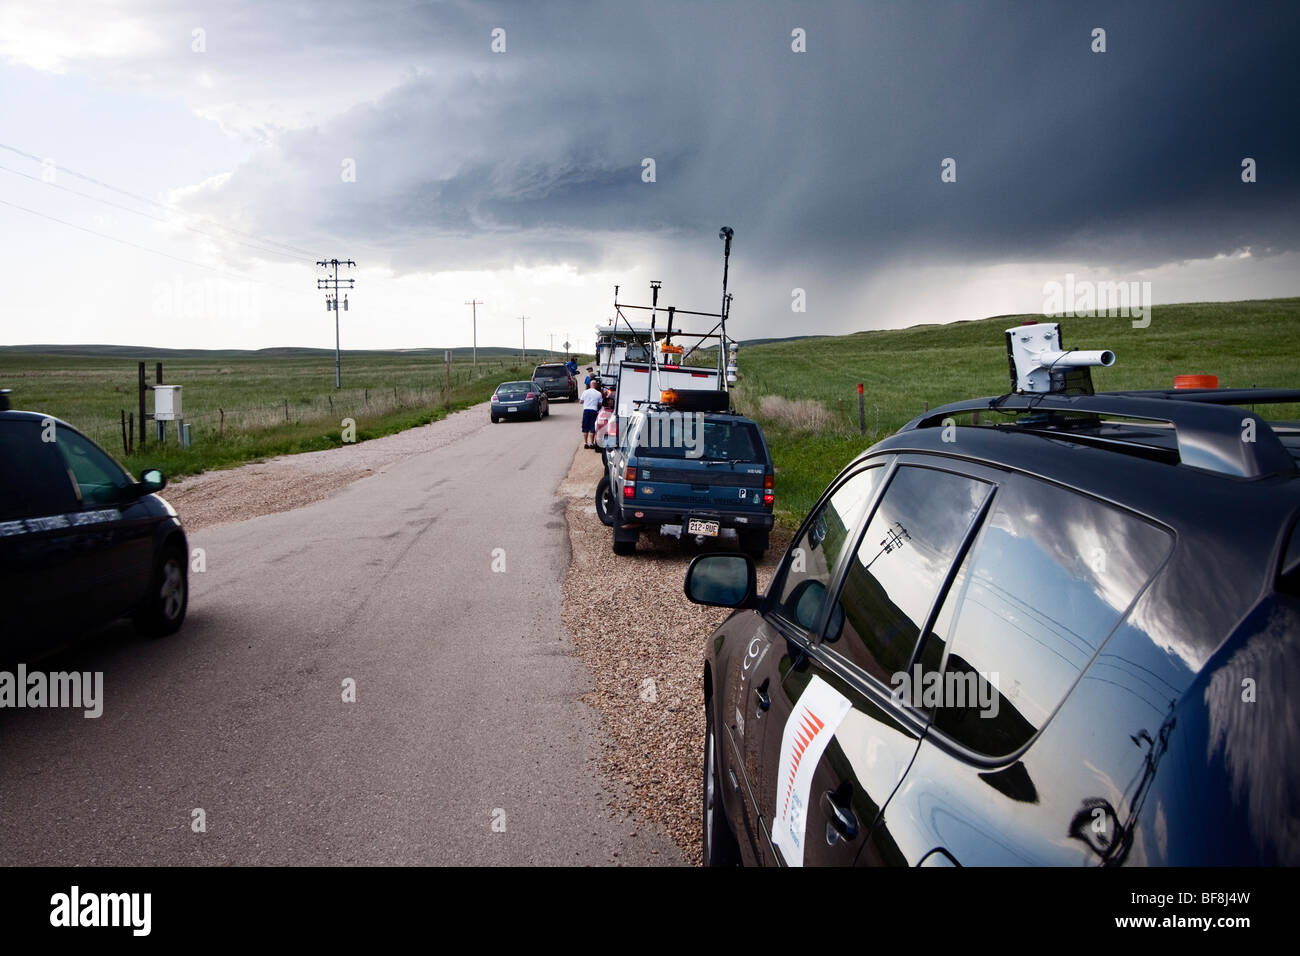 Storm Chasers participant au projet Vortex 2 park le long d'une route en milieu rural Nebraska, 6 juin 2009. Banque D'Images